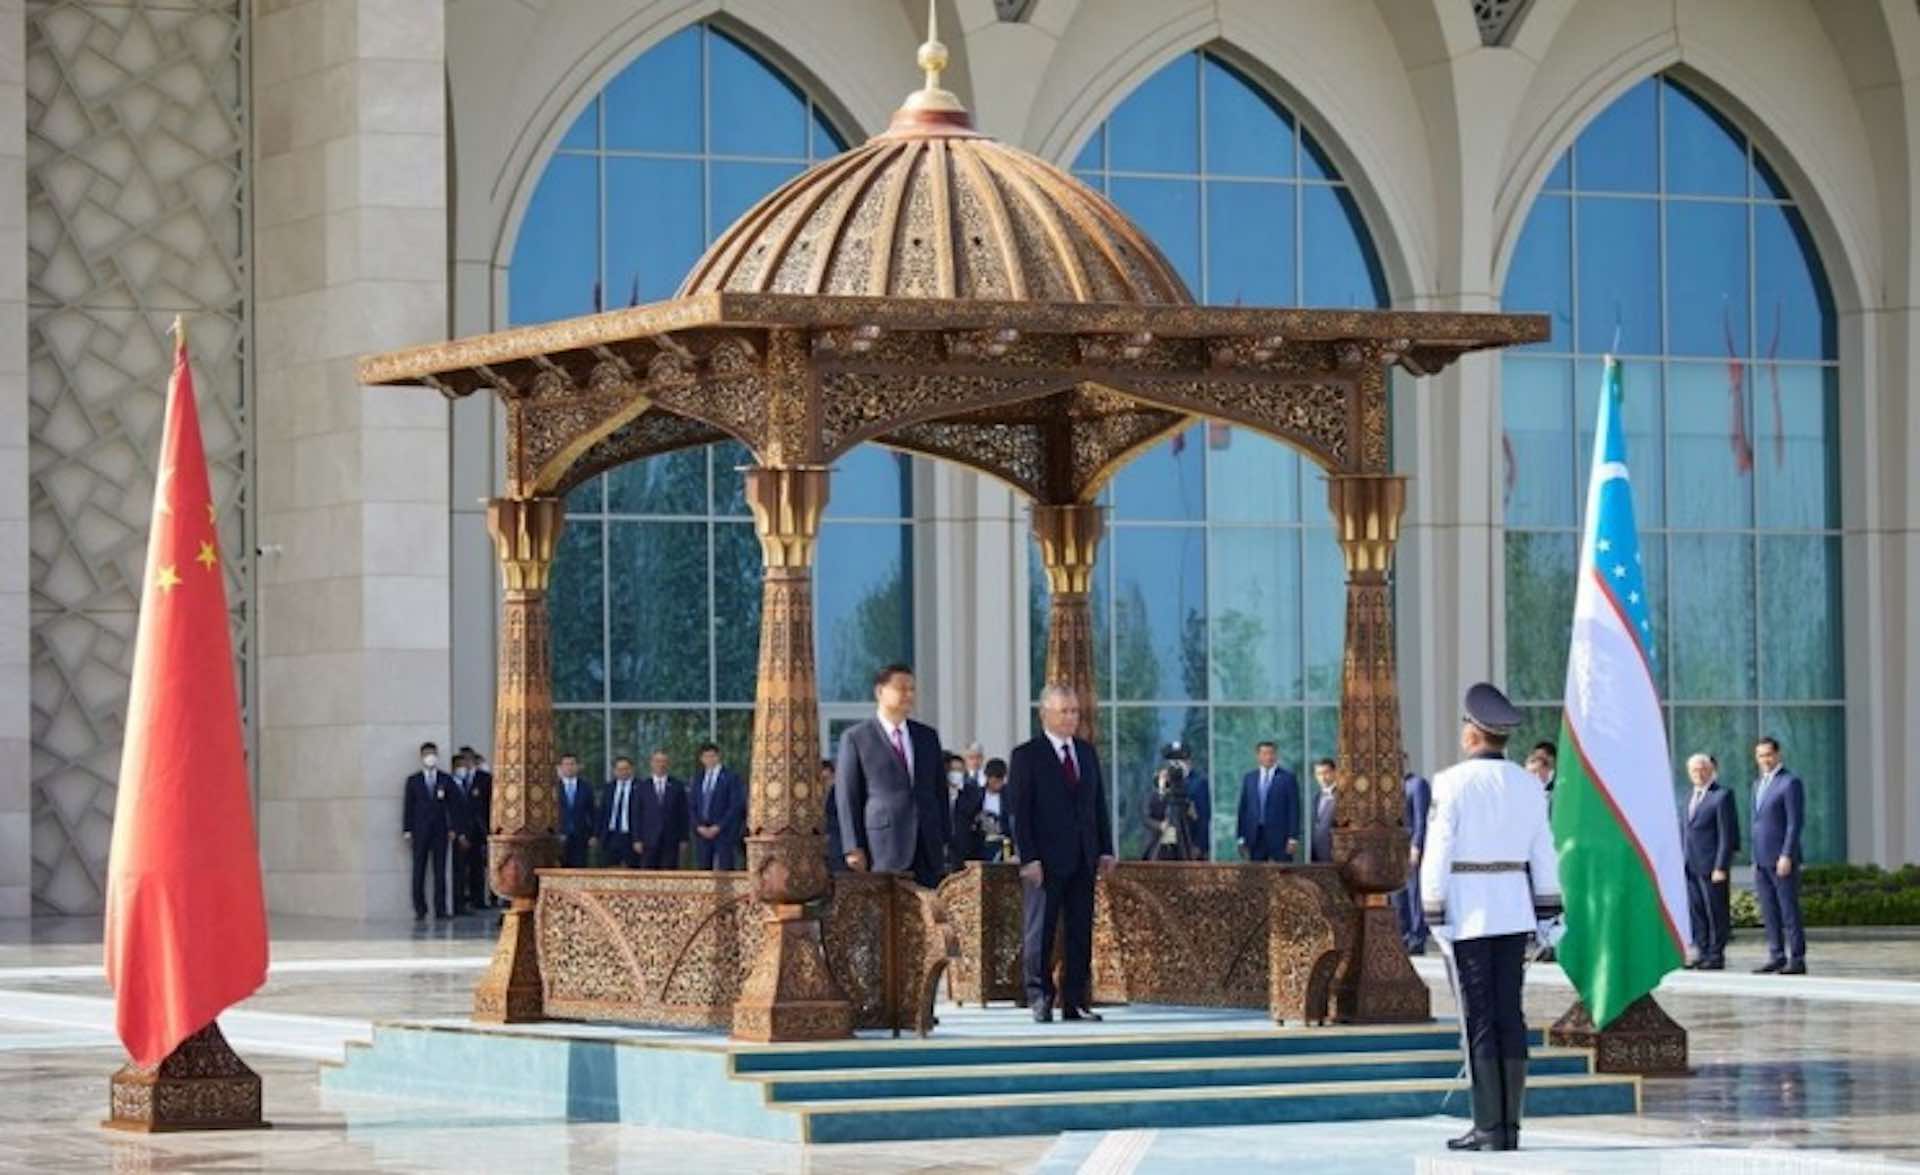 Xi and Putin will meet in Samarkand